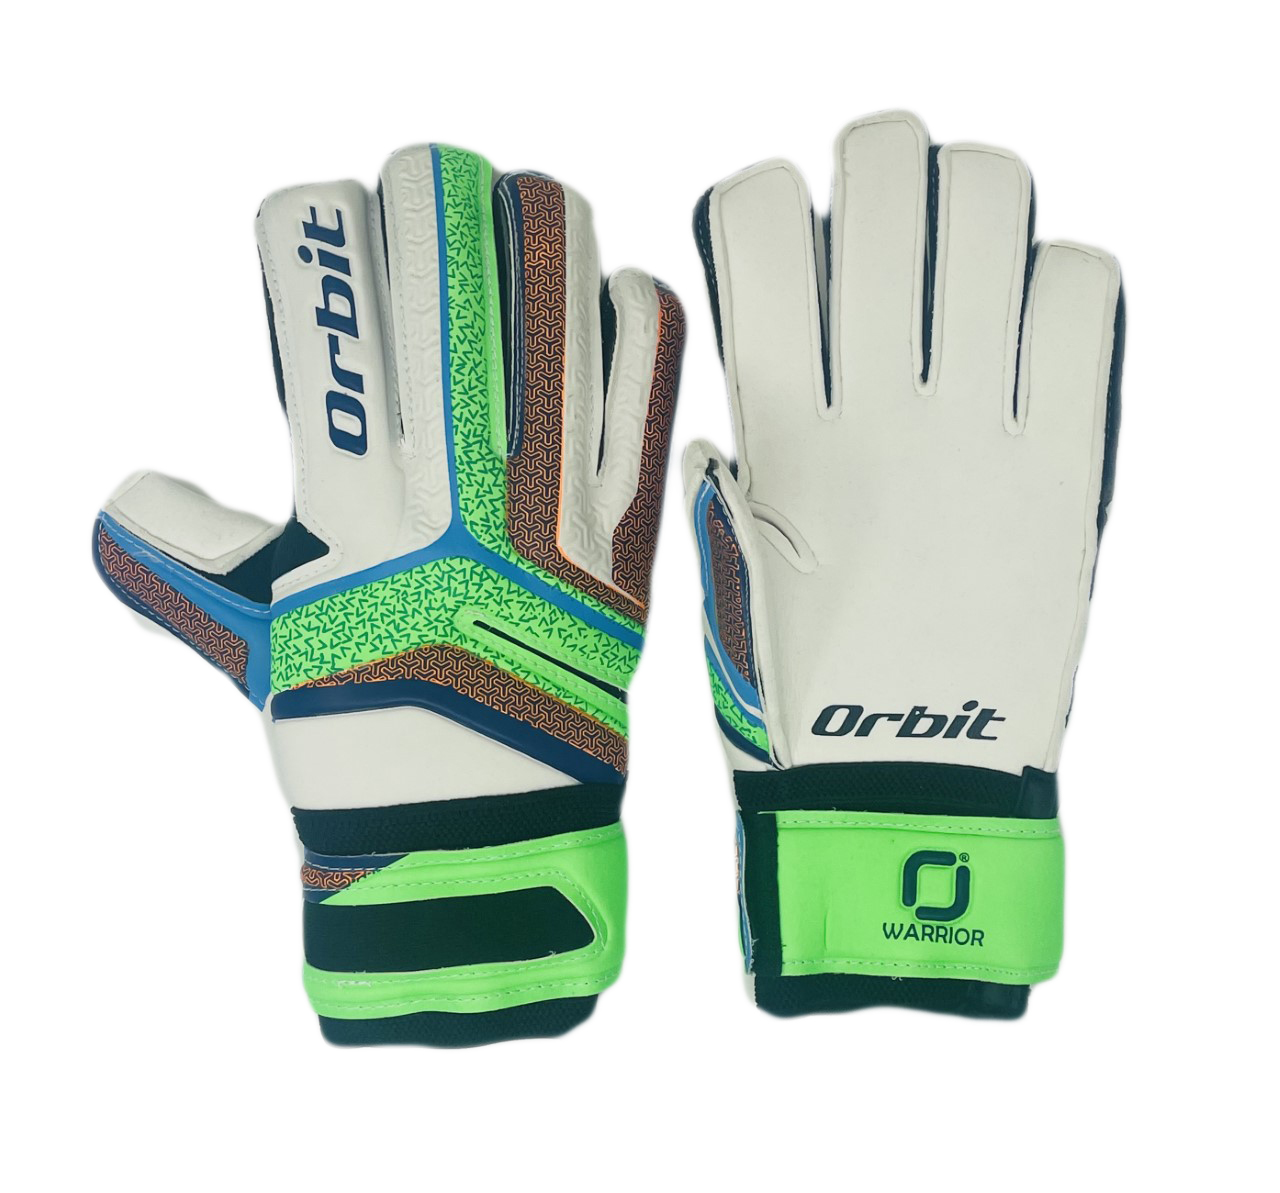 Size 5,6,7,8,9,10 Authentic Goalie Pair Glove<br/>Quantity Available:80 pcs 